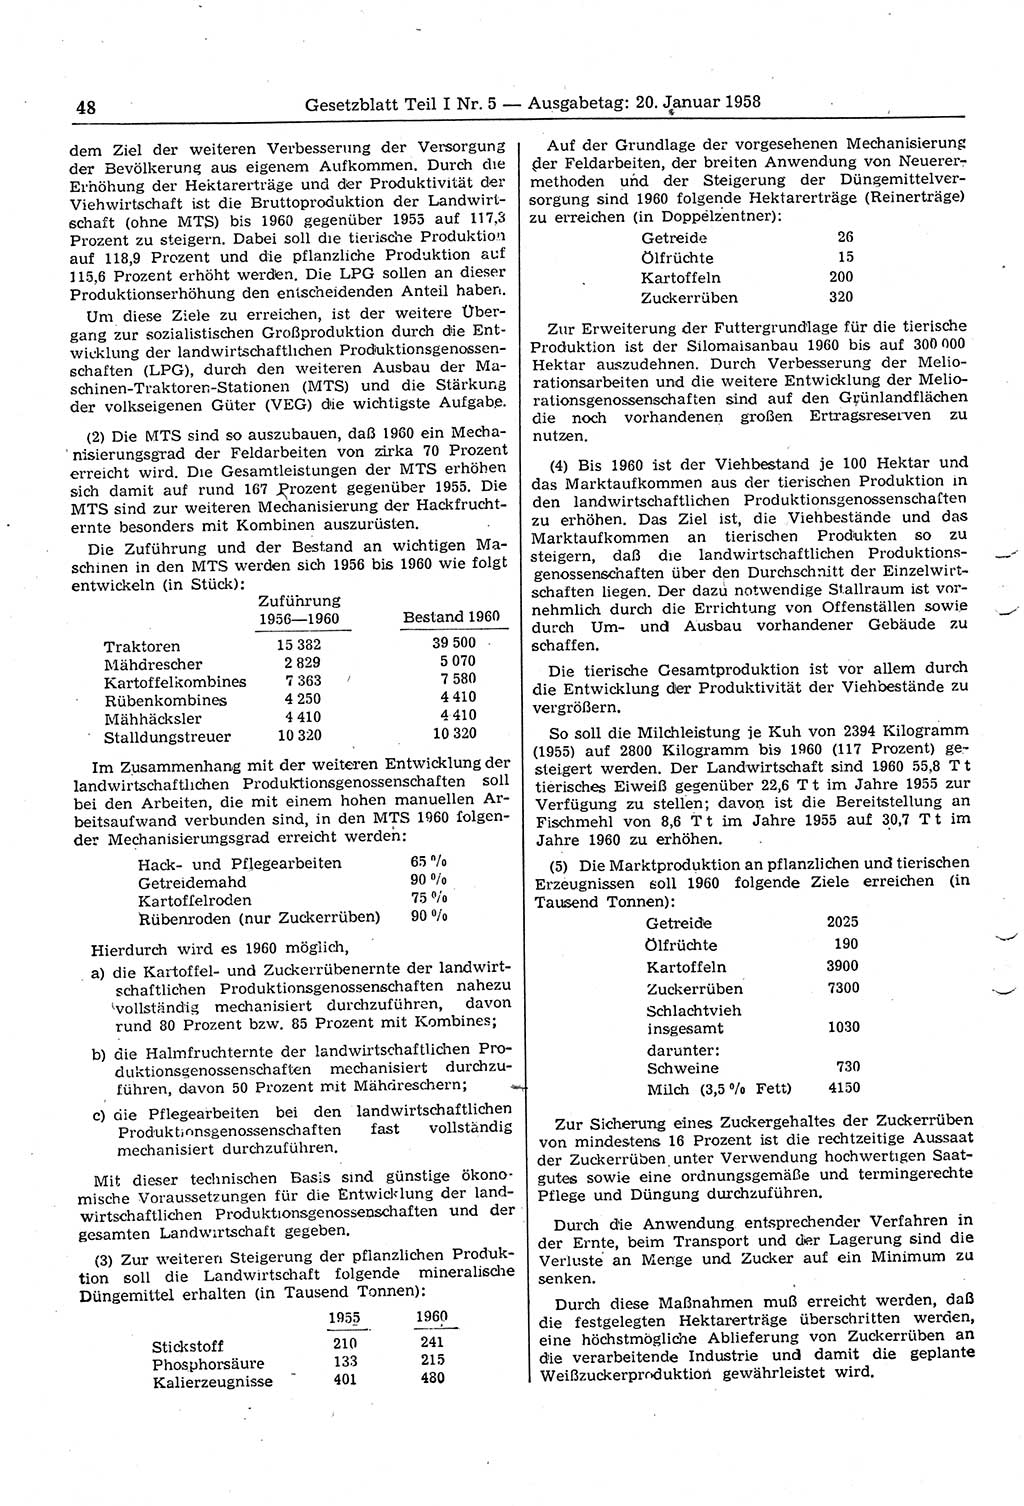 Gesetzblatt (GBl.) der Deutschen Demokratischen Republik (DDR) Teil Ⅰ 1958, Seite 48 (GBl. DDR Ⅰ 1958, S. 48)